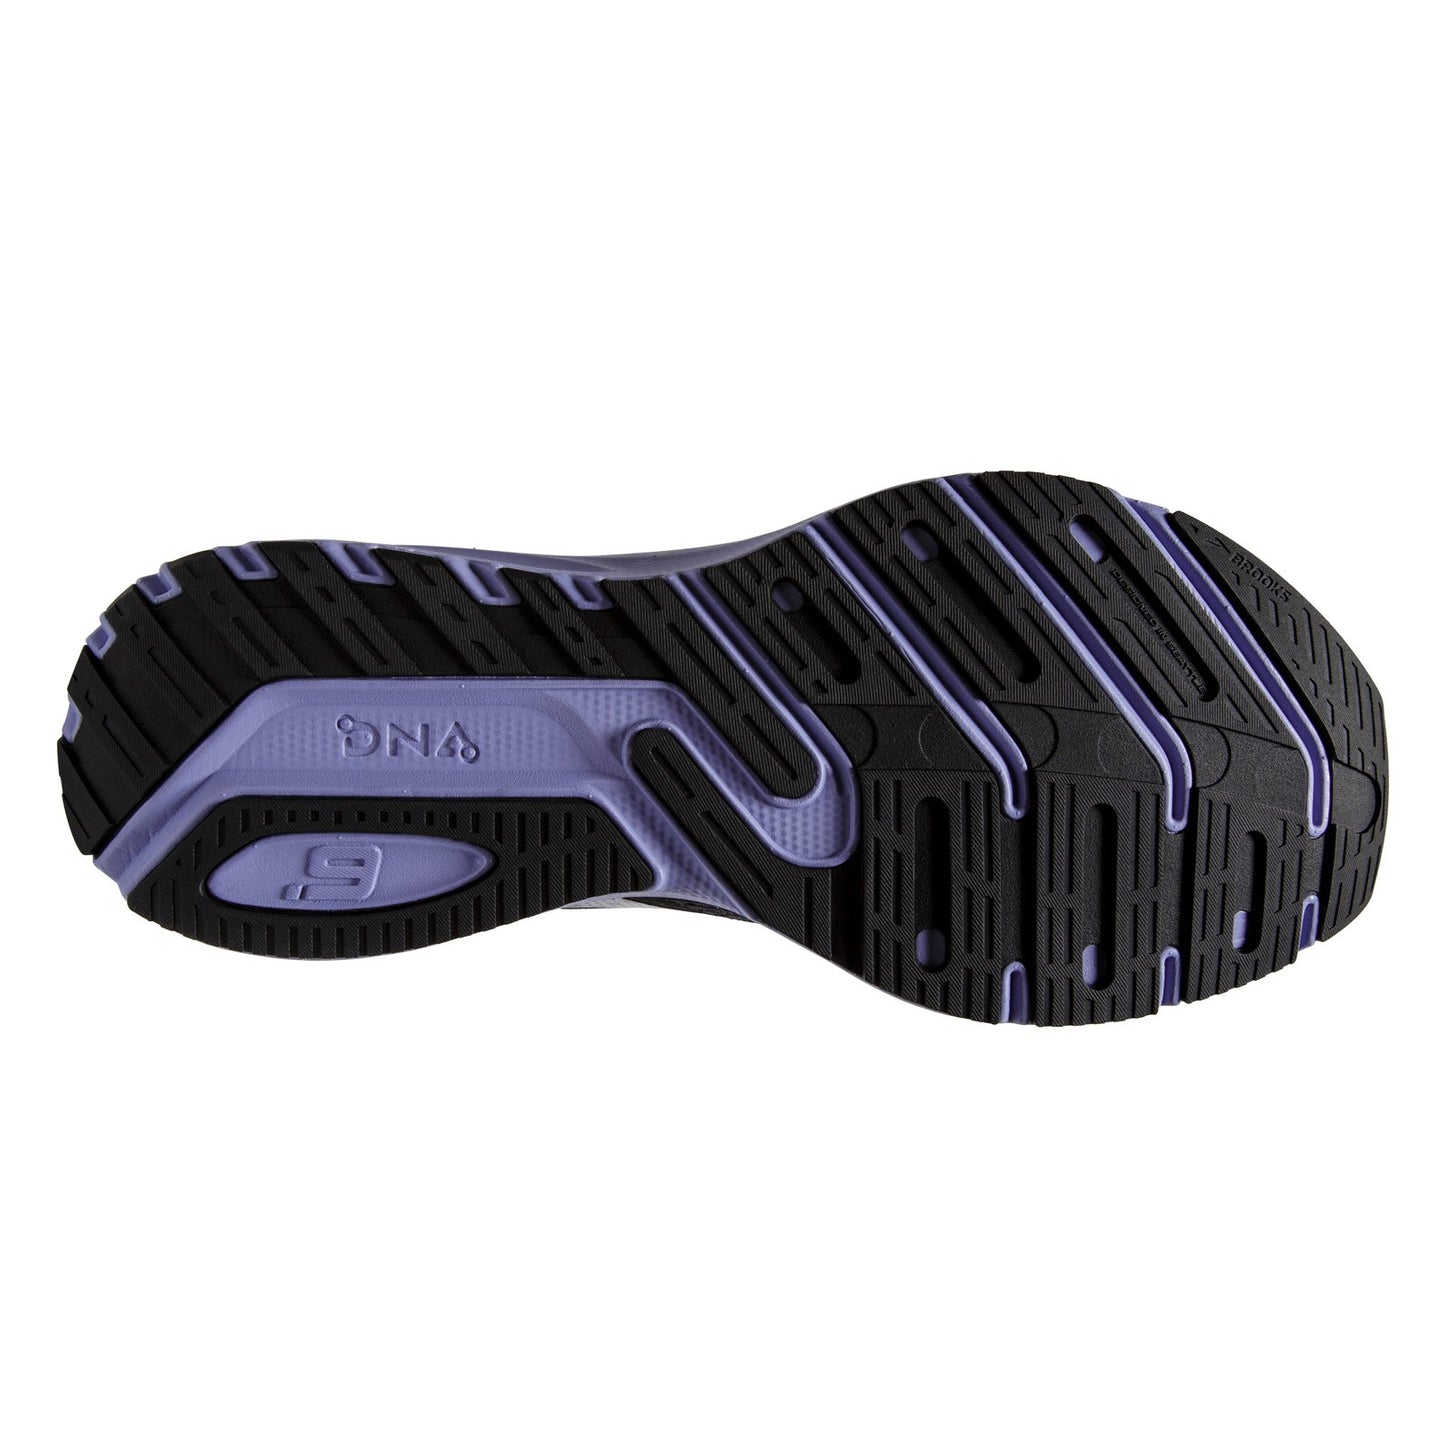 Peltz Shoes  Women's Brooks Launch 9 Running Shoe - Wide Width Black/Ebony/Purple 120373 1D 060